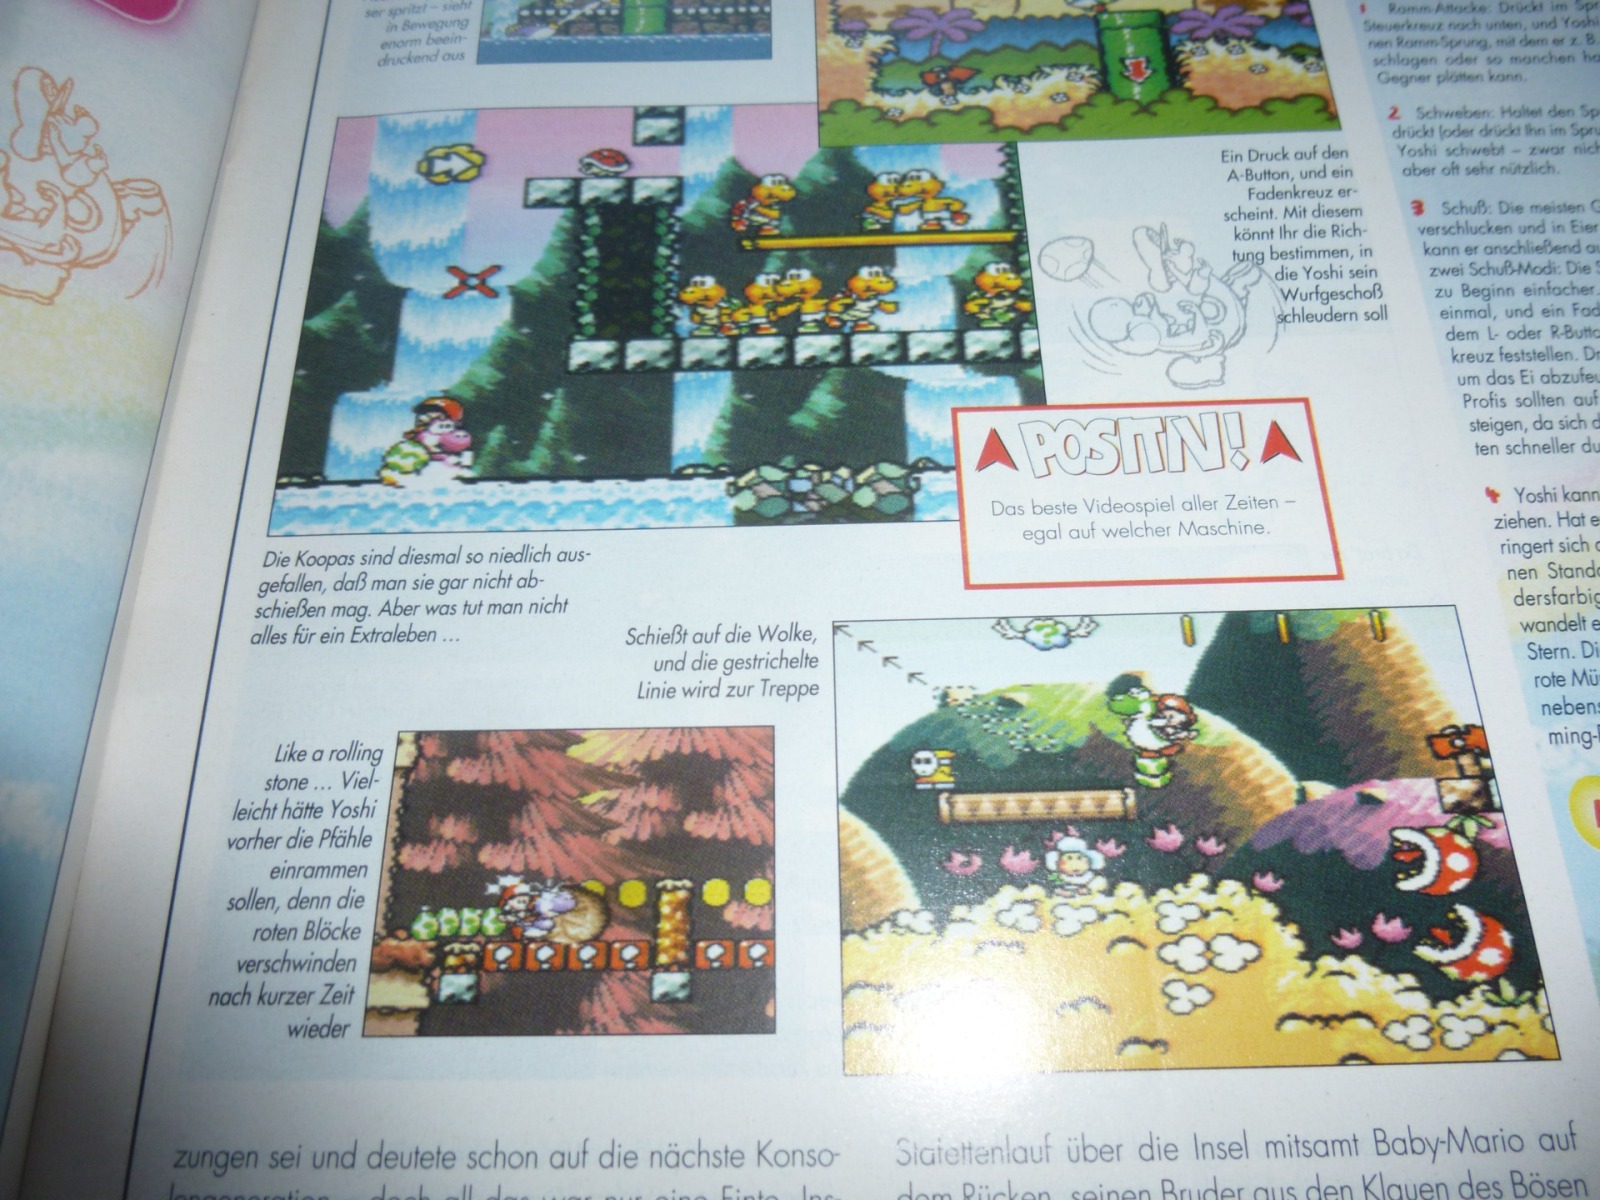 TOTAL Das unabhängige Magazin - 100% Nintendo - Ausgabe 10/95 1995 6